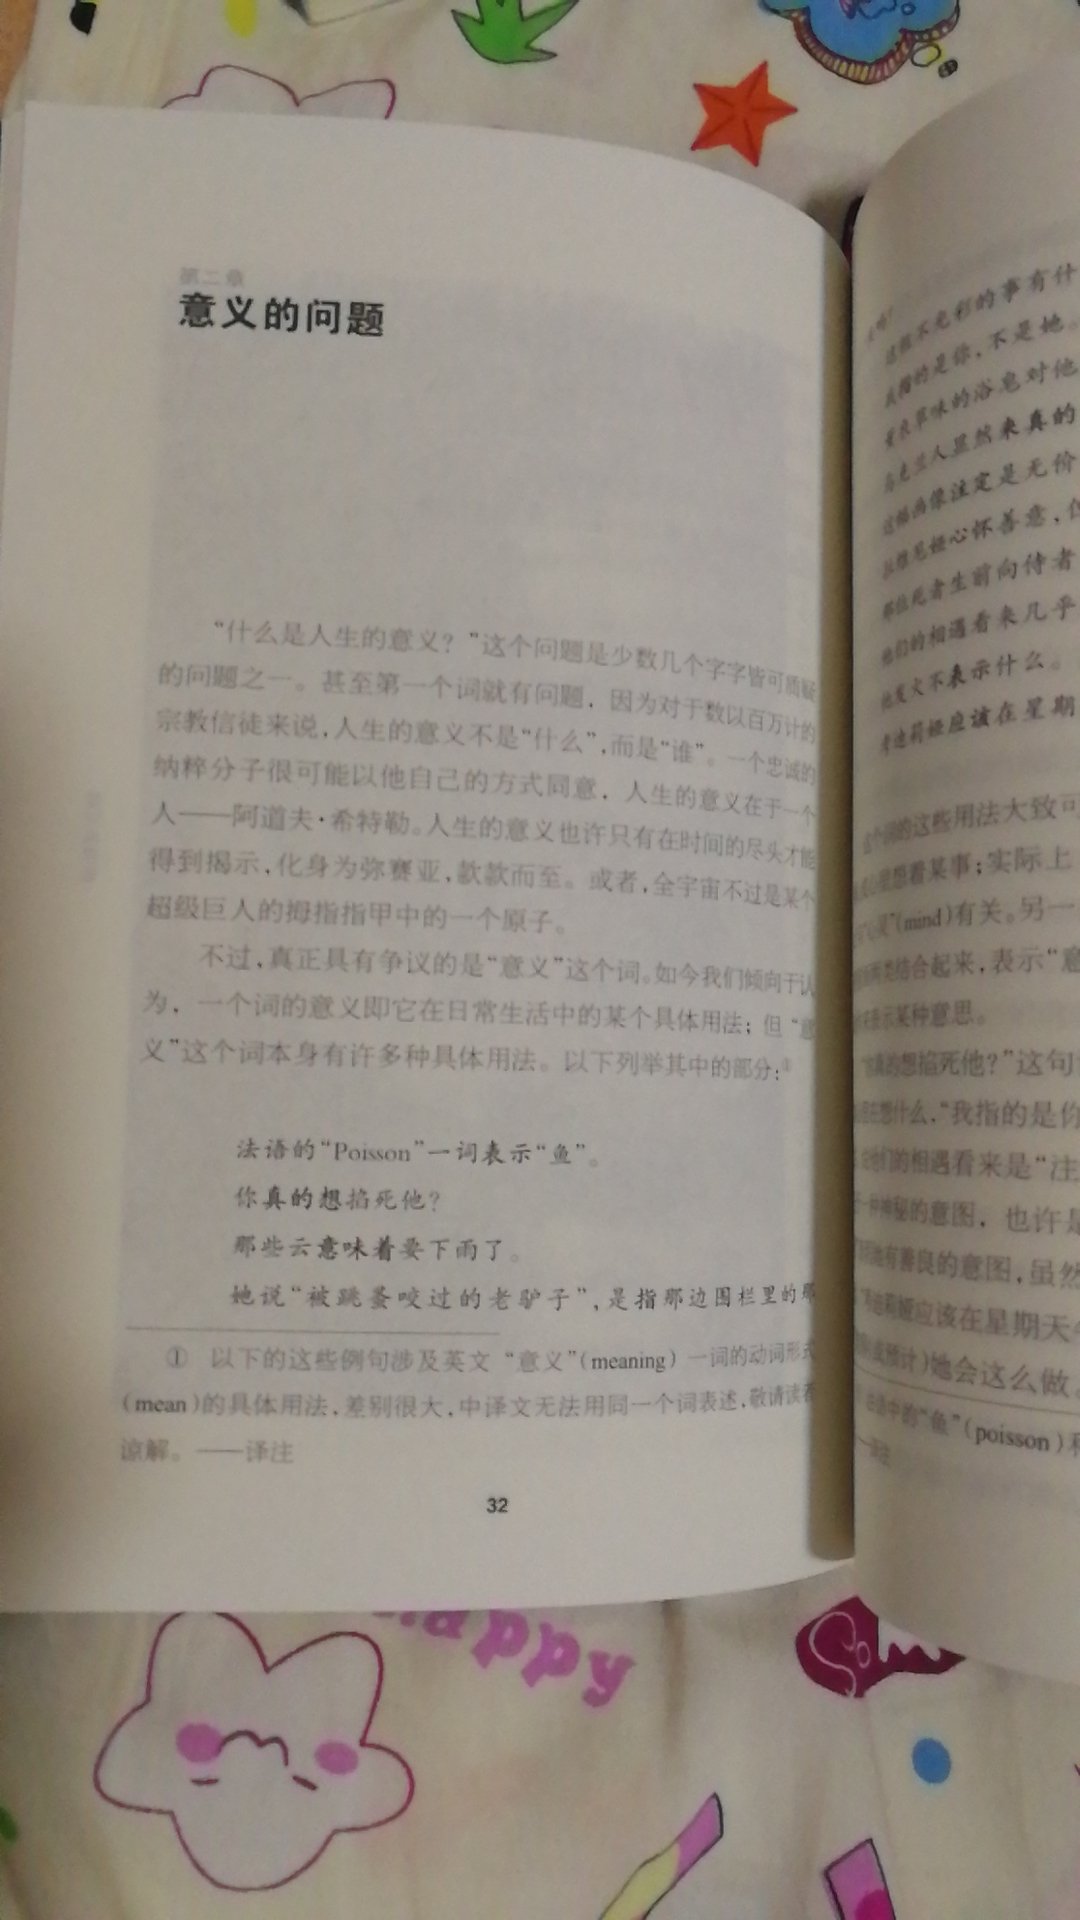 中文版都是“XX作序”“XX推荐”，自己却写不出这样篇幅短小但内容深刻的作品，只能说明国内还没达到这样的水准，还需继续努力。